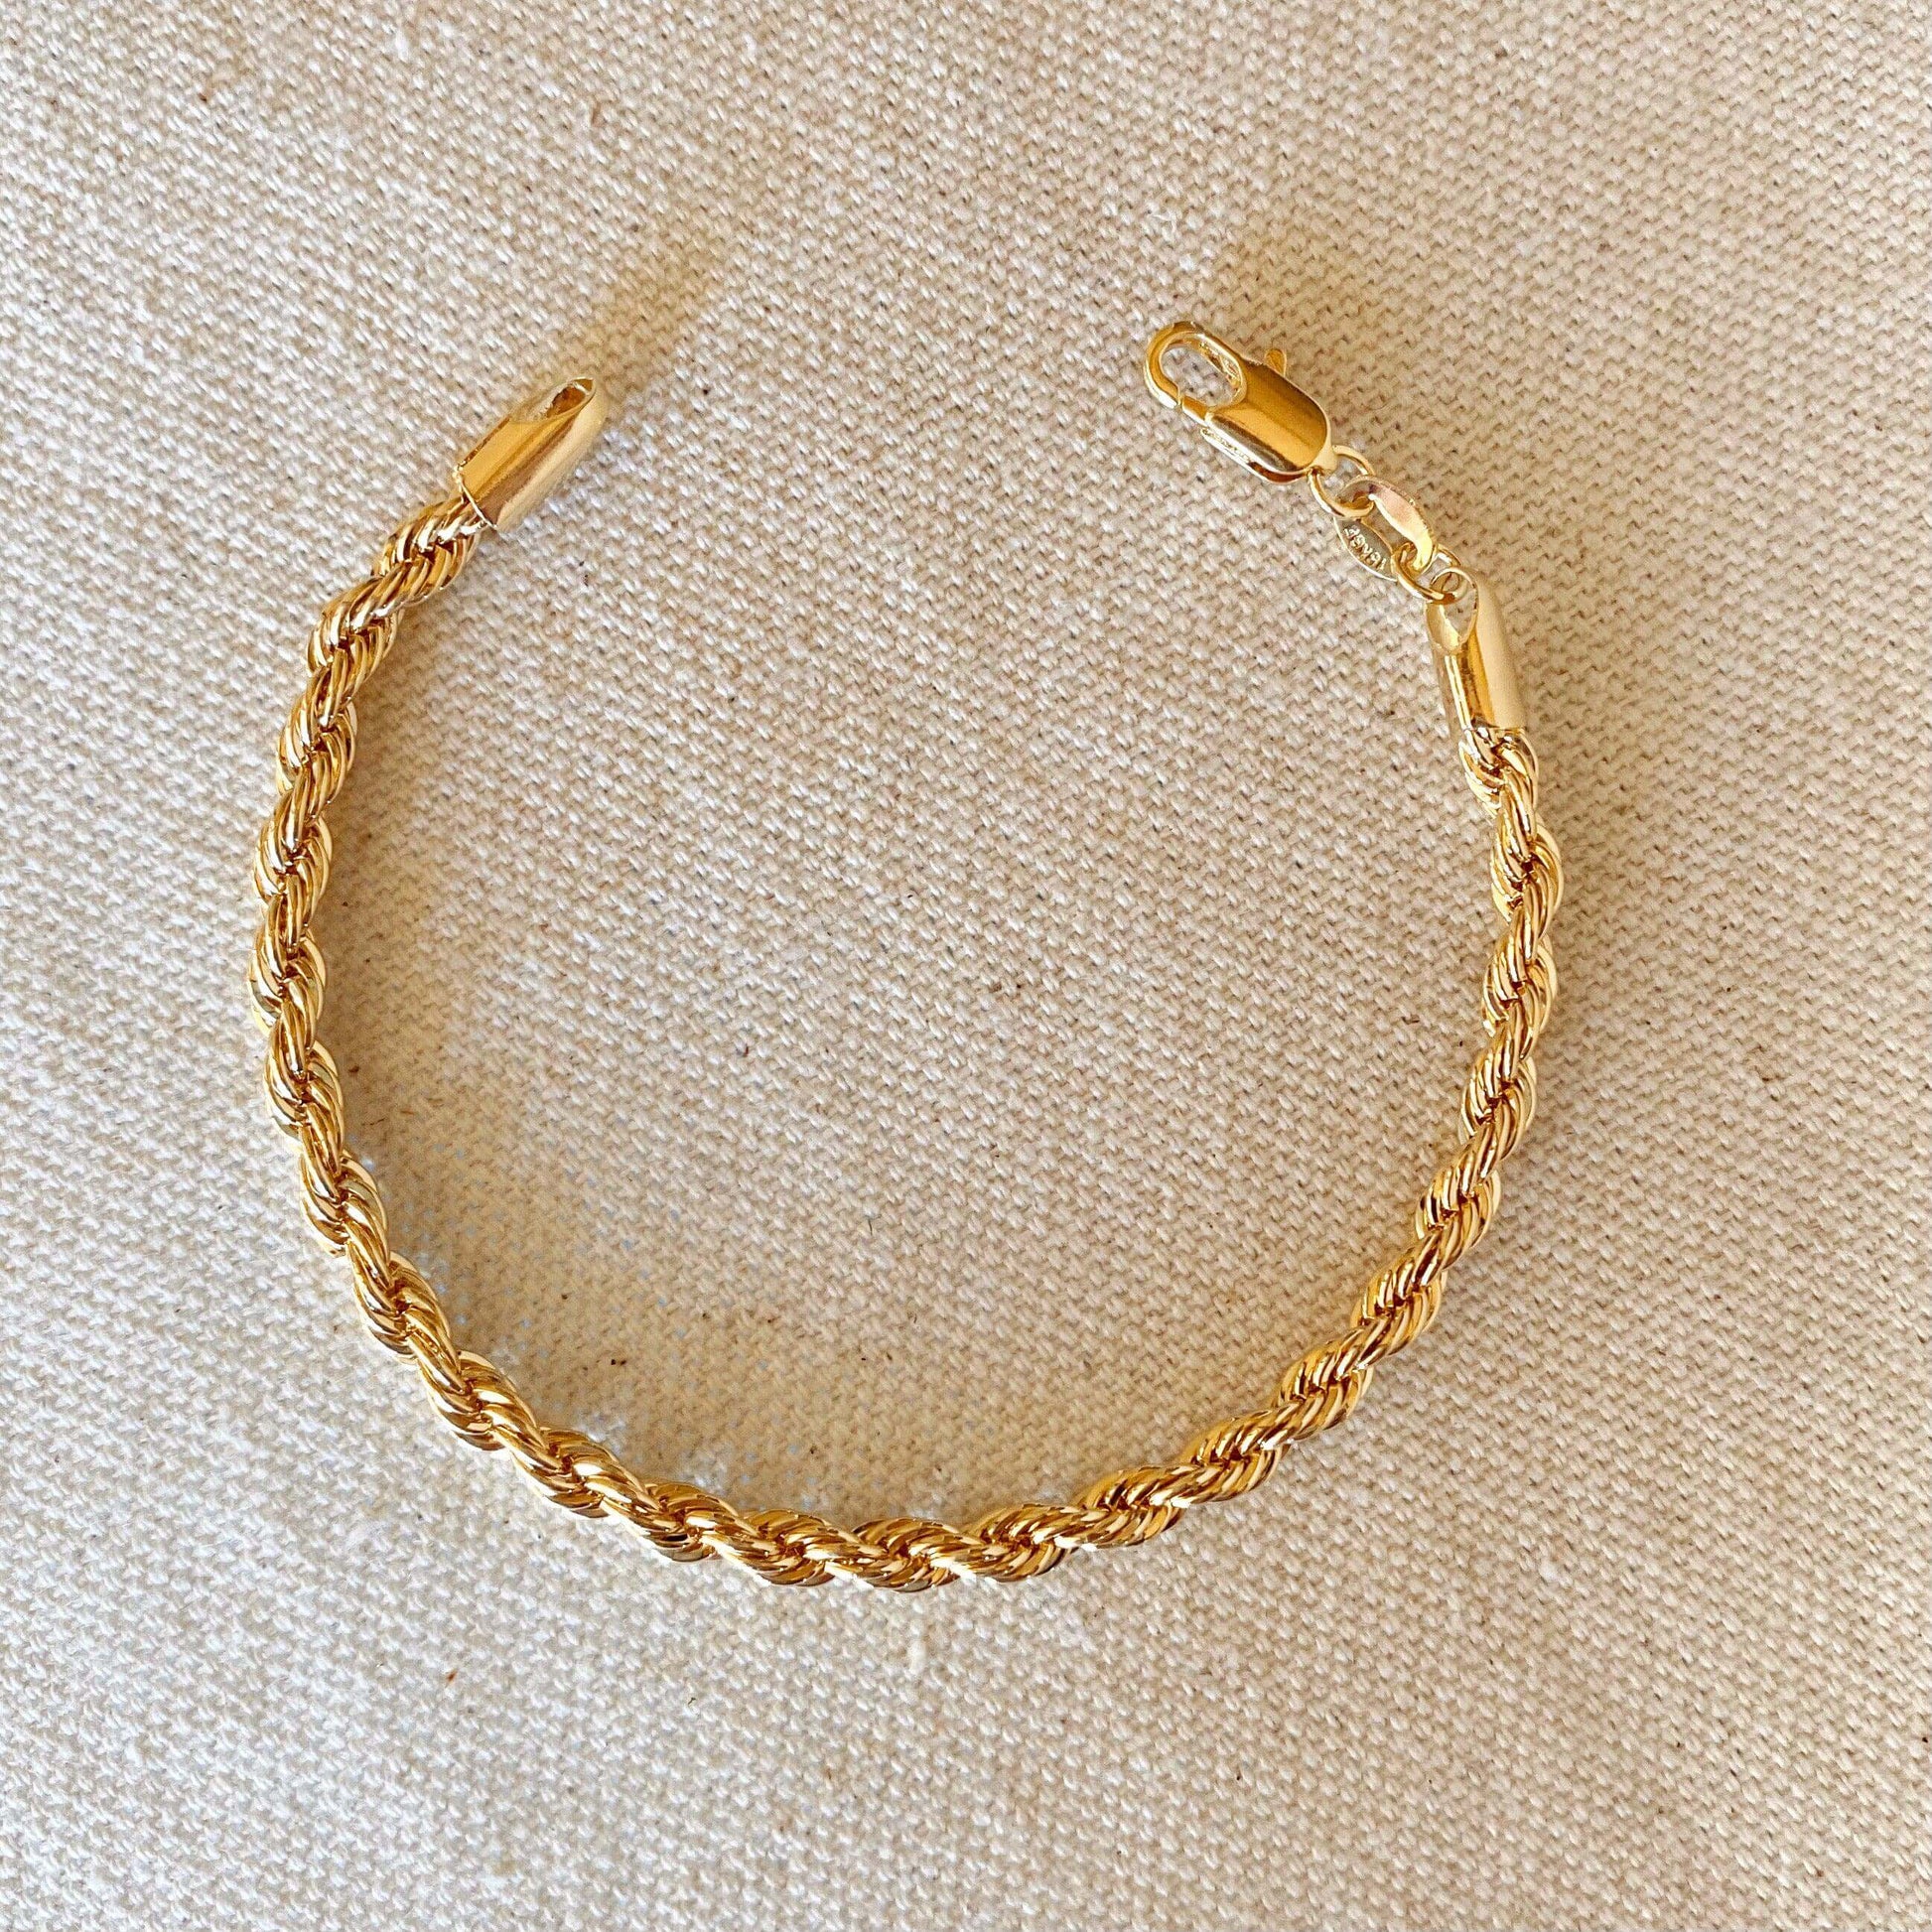 GoldFi 18k Gold Filled 4mm Rope Bracelet